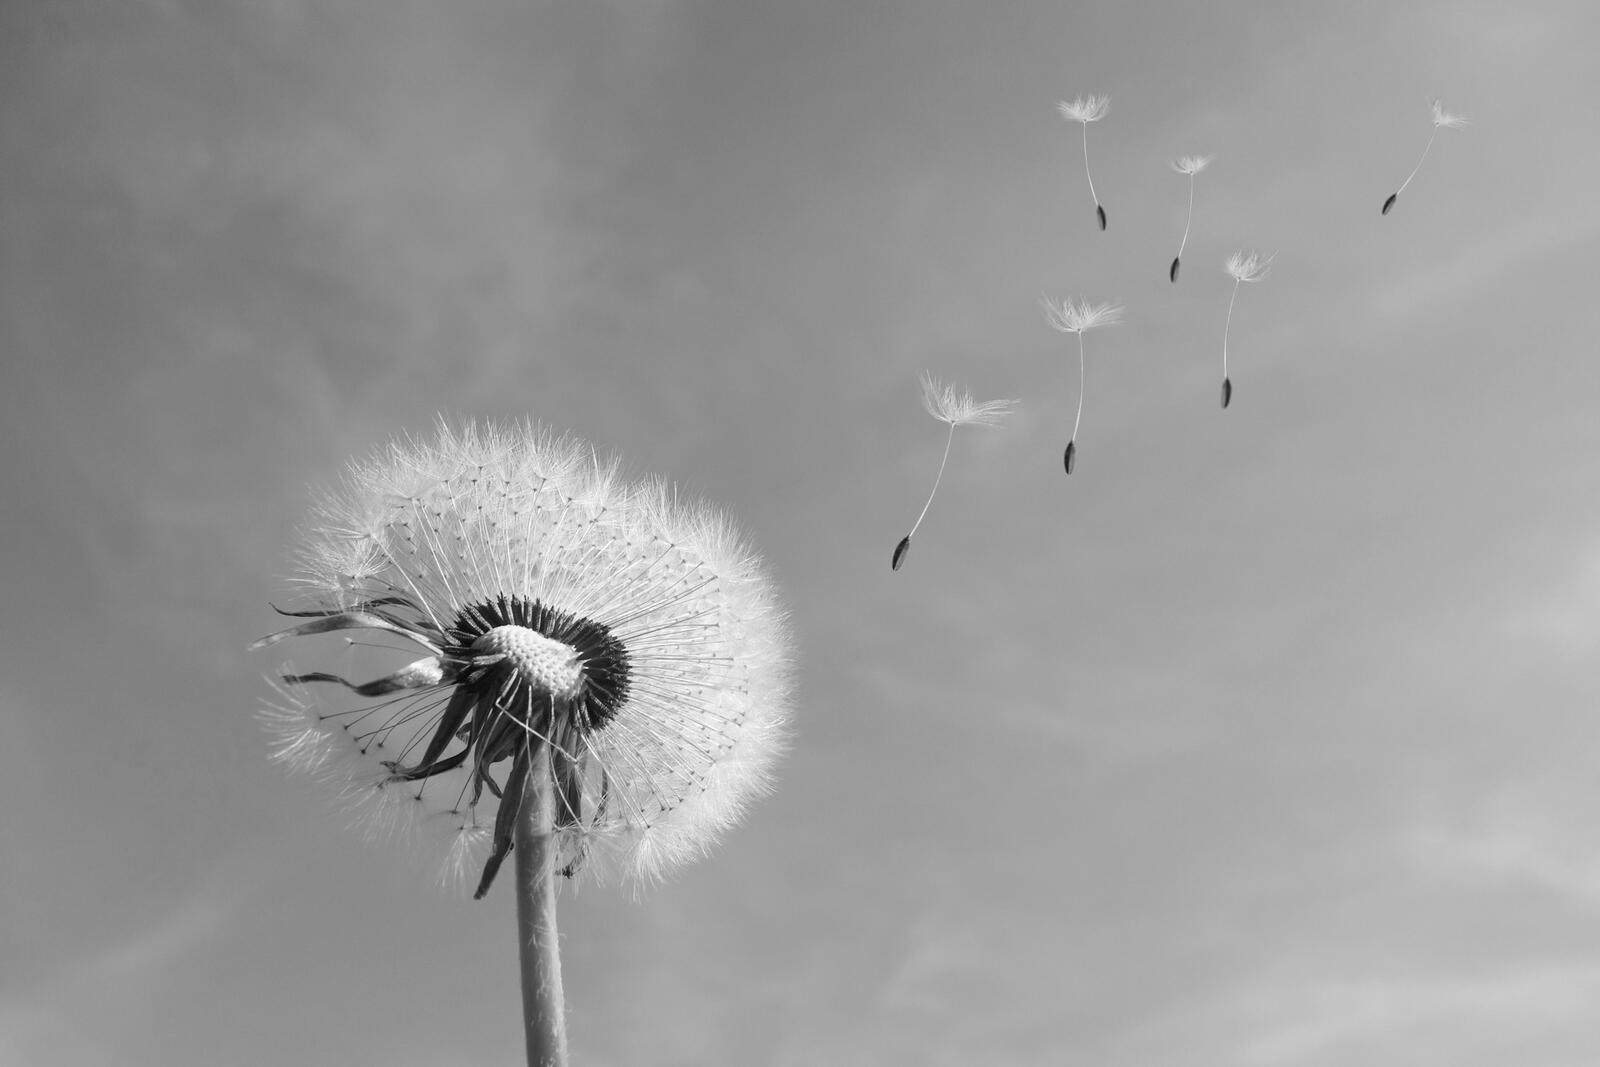 免费照片一张蒲公英降落伞随风飞舞的黑白照片。